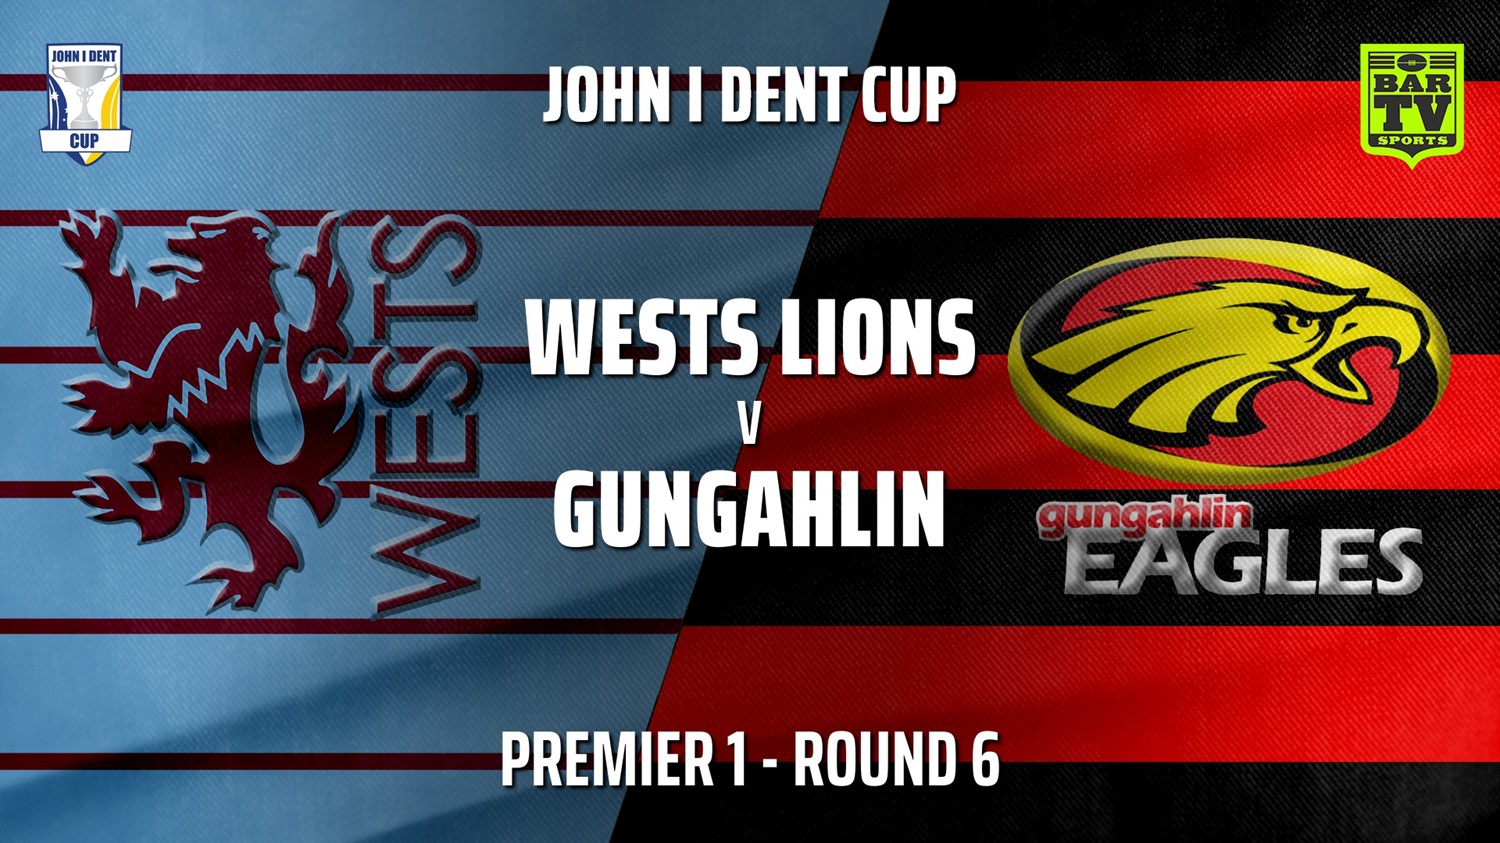 210529-John I Dent Round 6 - Premier 1 - Wests Lions v Gungahlin Eagles Slate Image